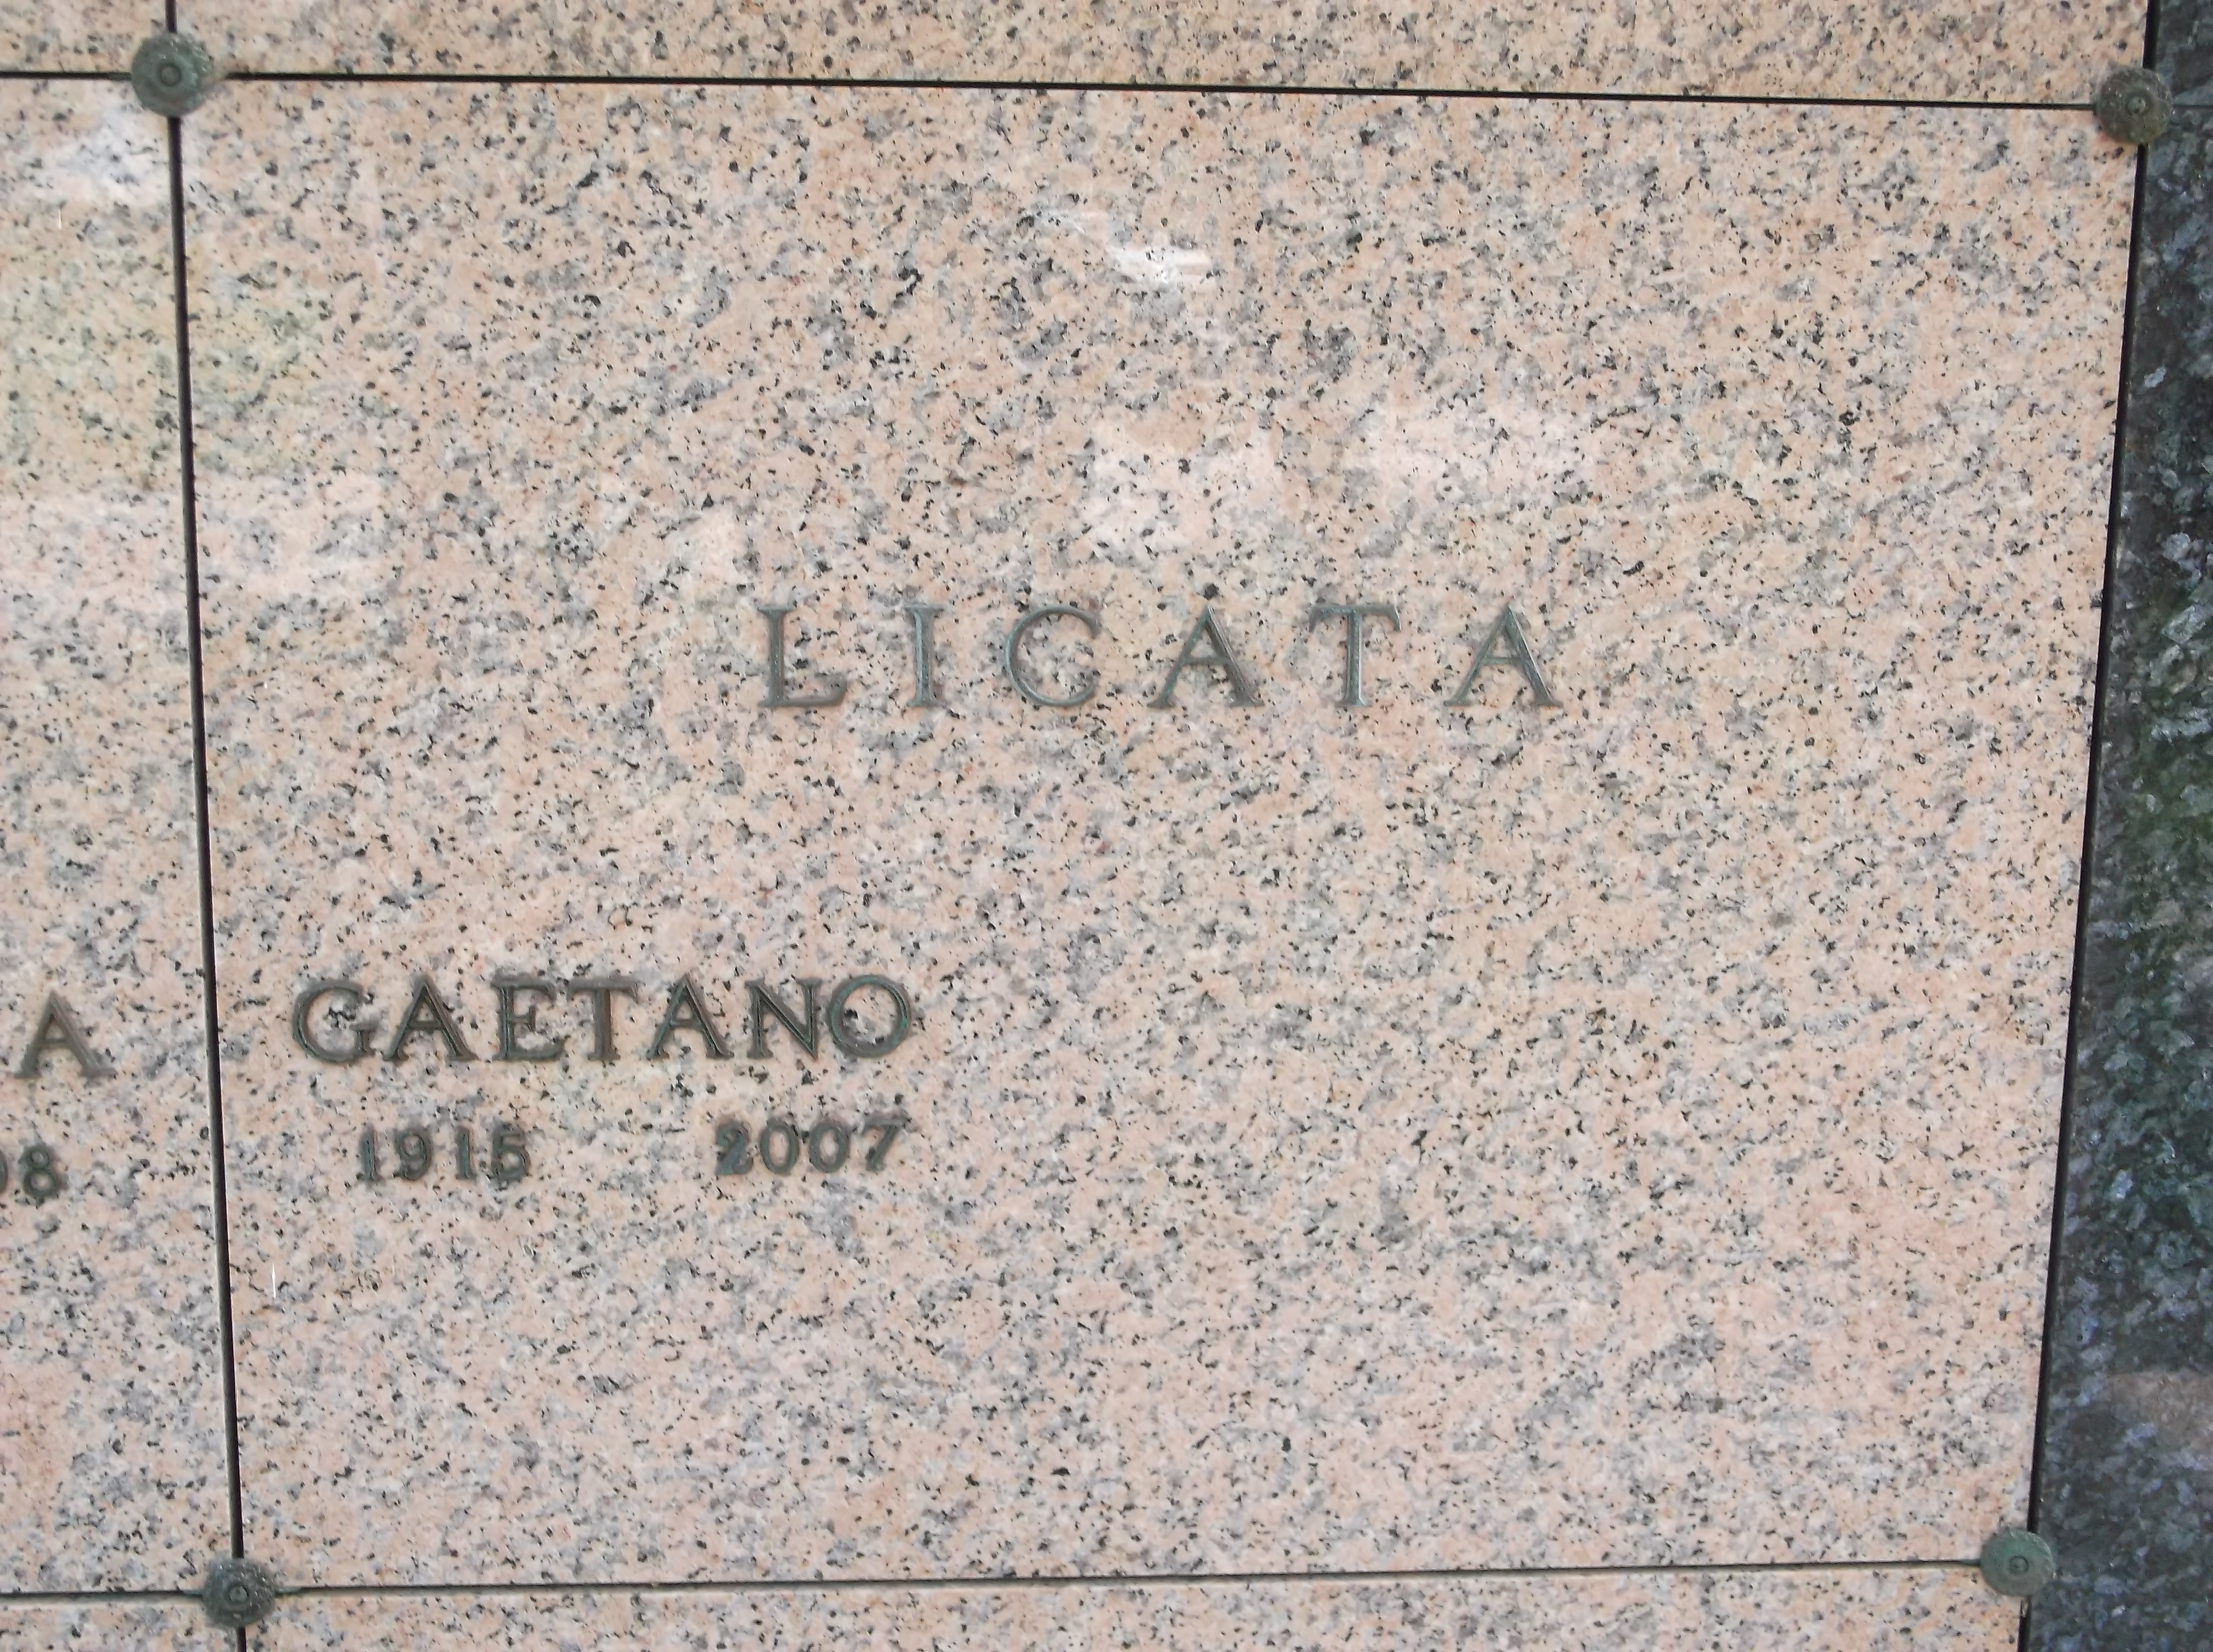 Gaetano Licata